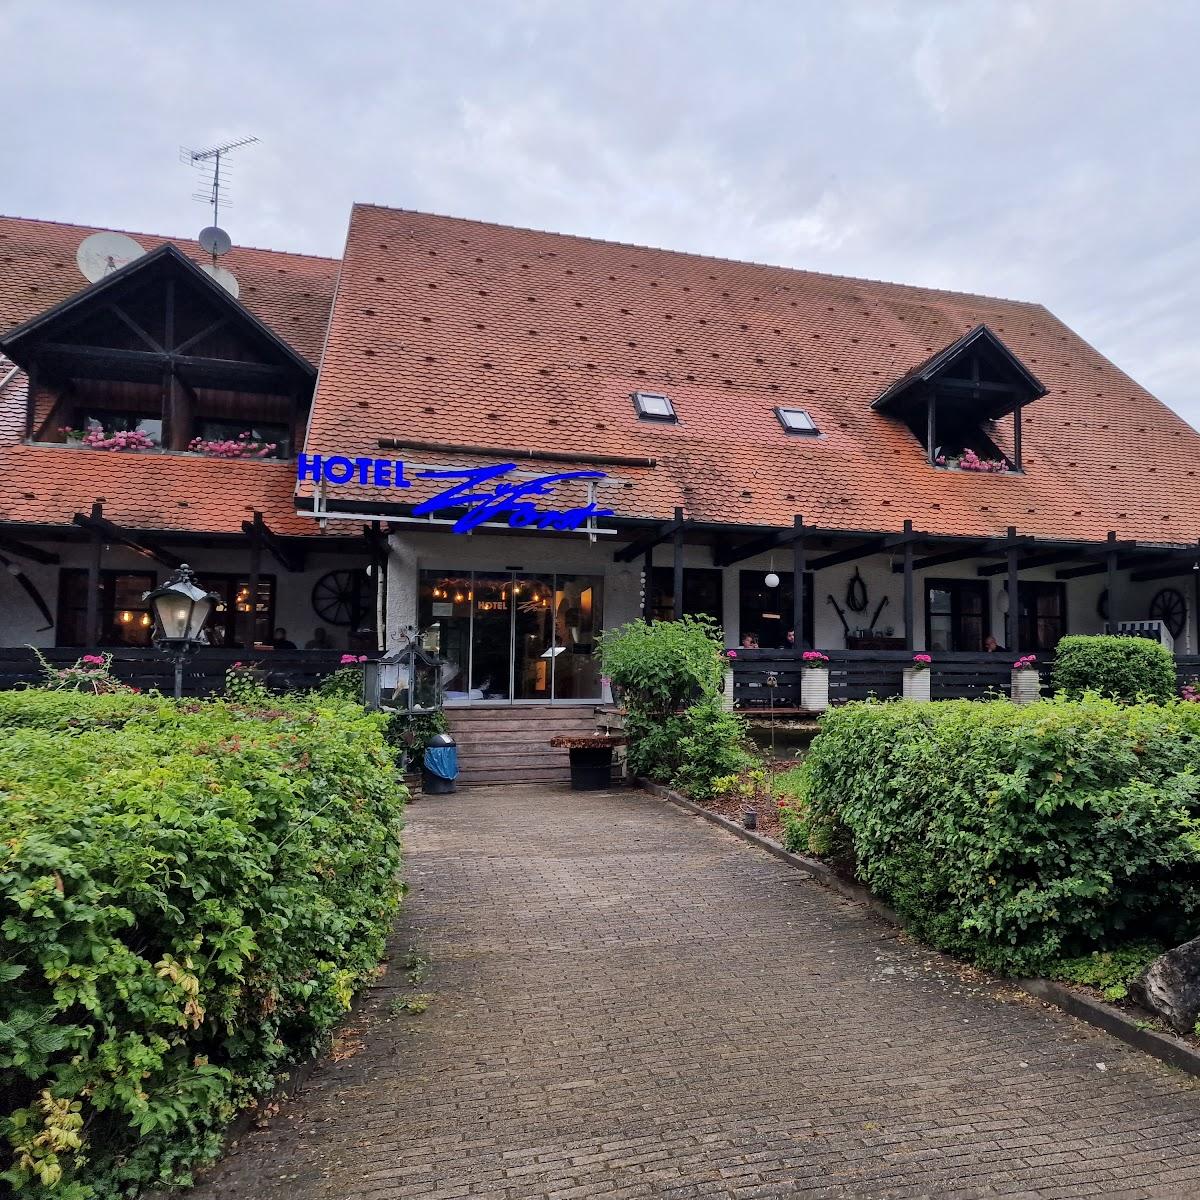 Restaurant "Hotel Zum Forst" in Kranzberg